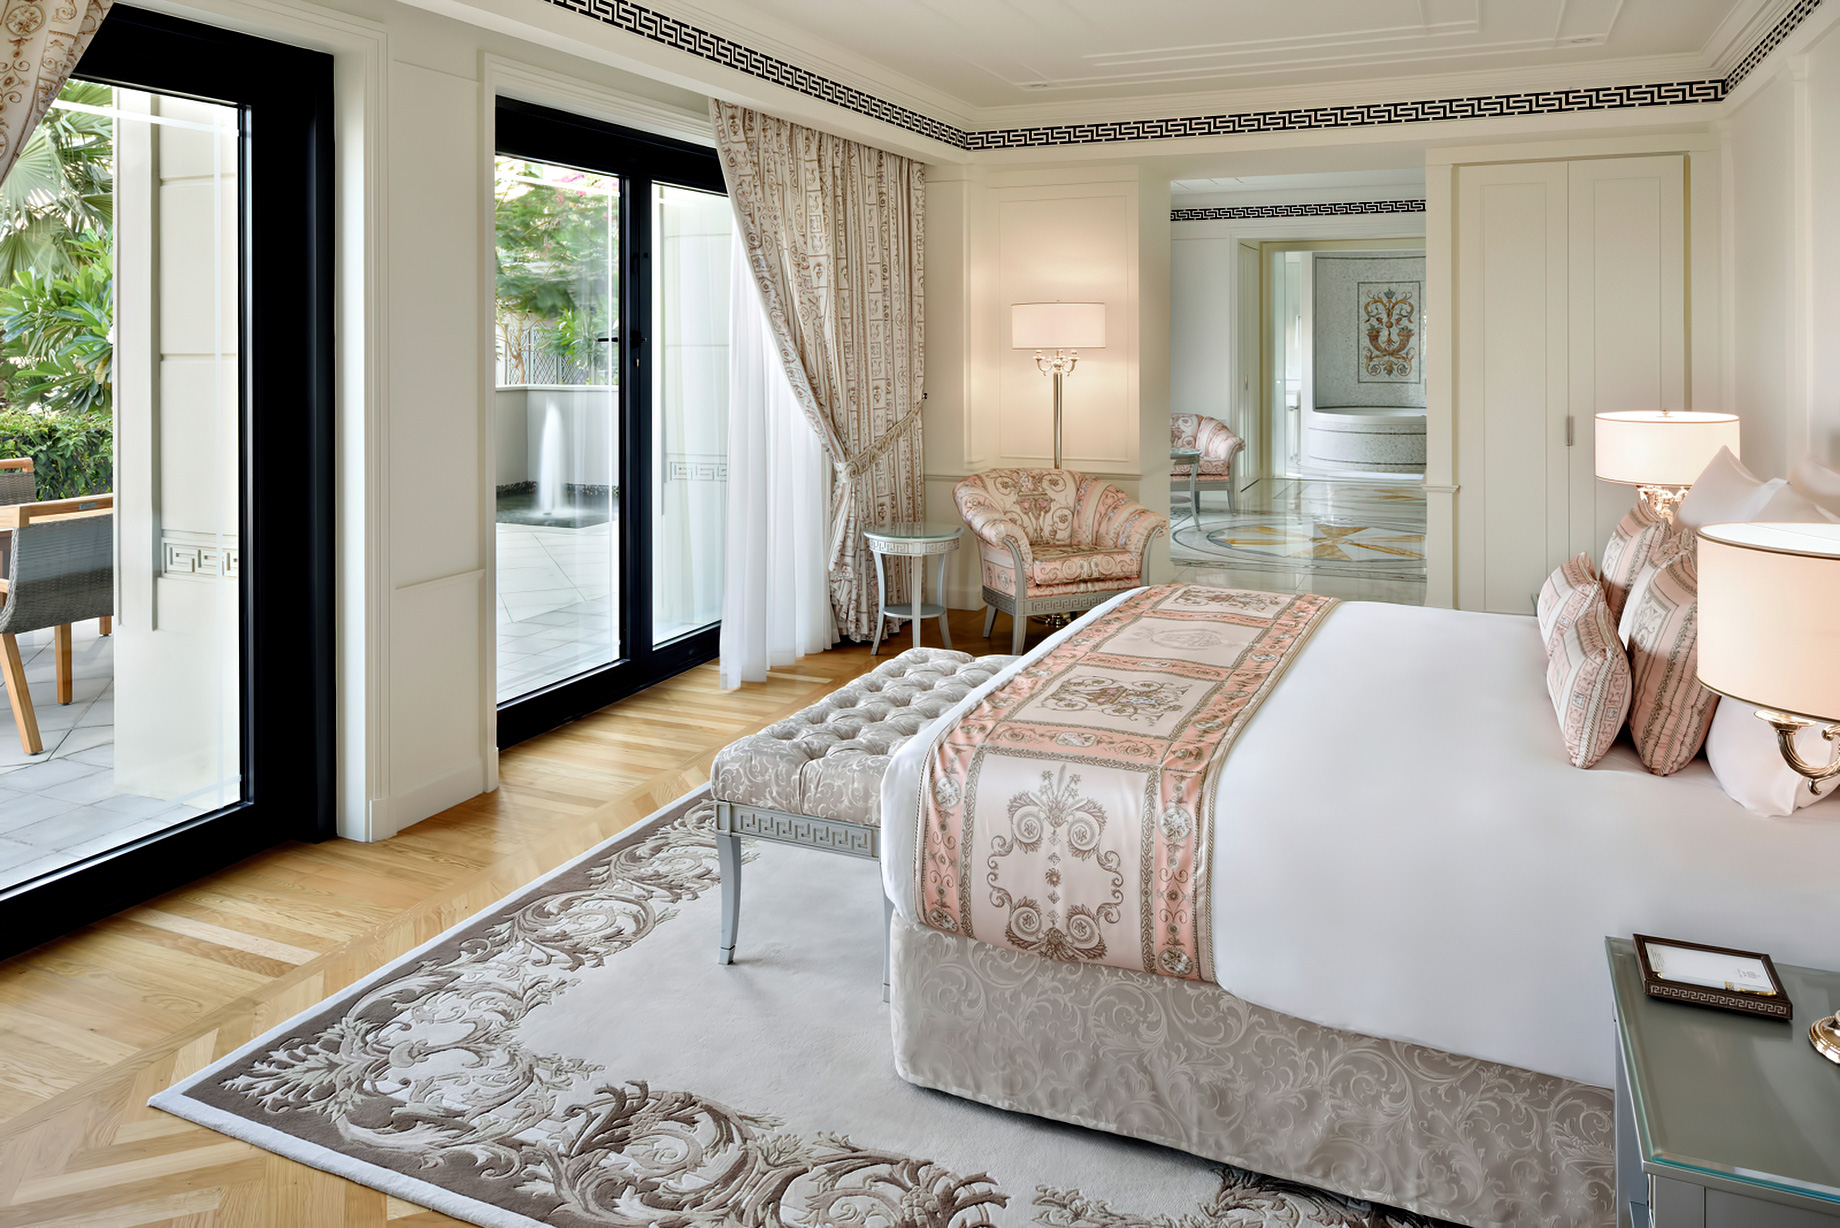 Palazzo Versace Dubai Hotel – Jaddaf Waterfront, Dubai, UAE – 6 Bedroom Residence Master Bedroom